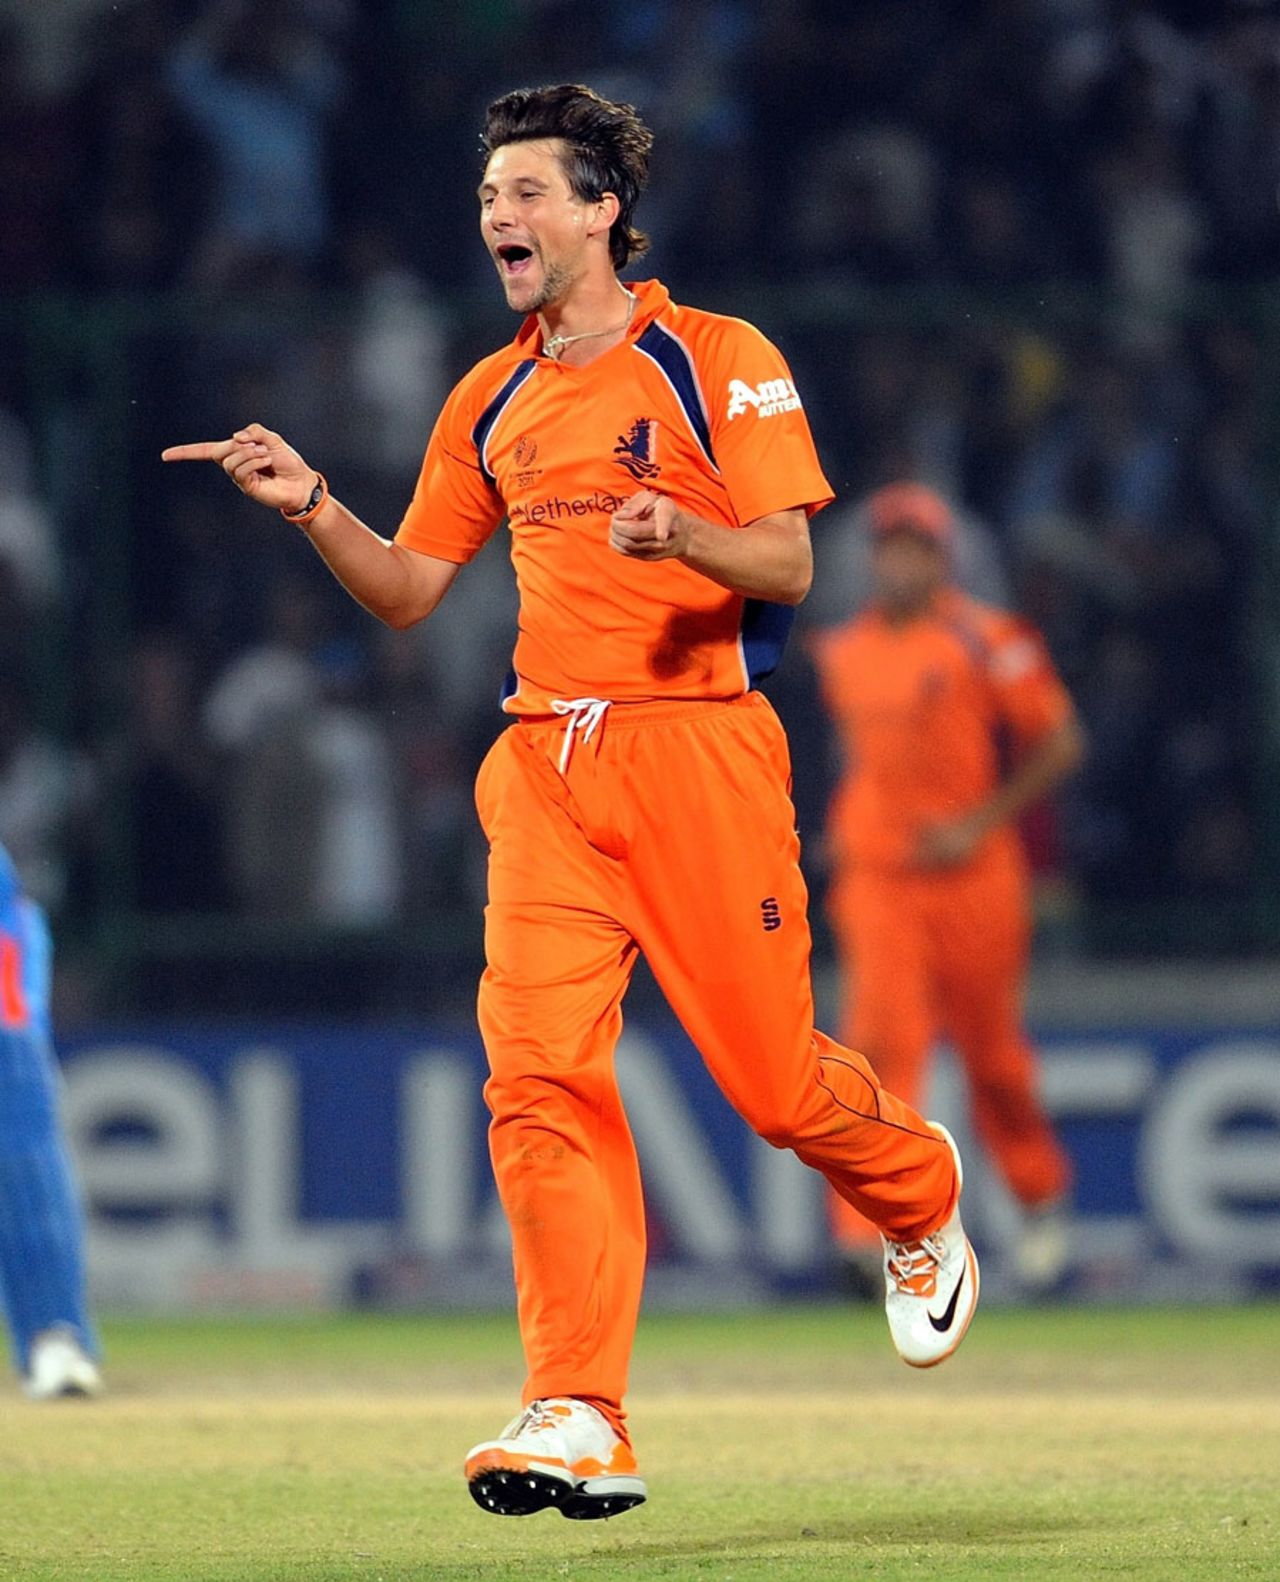 Pieter Seelaar celebrates after dismissing Virender Sehwag, India v Netherlands, Group B, World Cup, Delhi, March 9, 2011